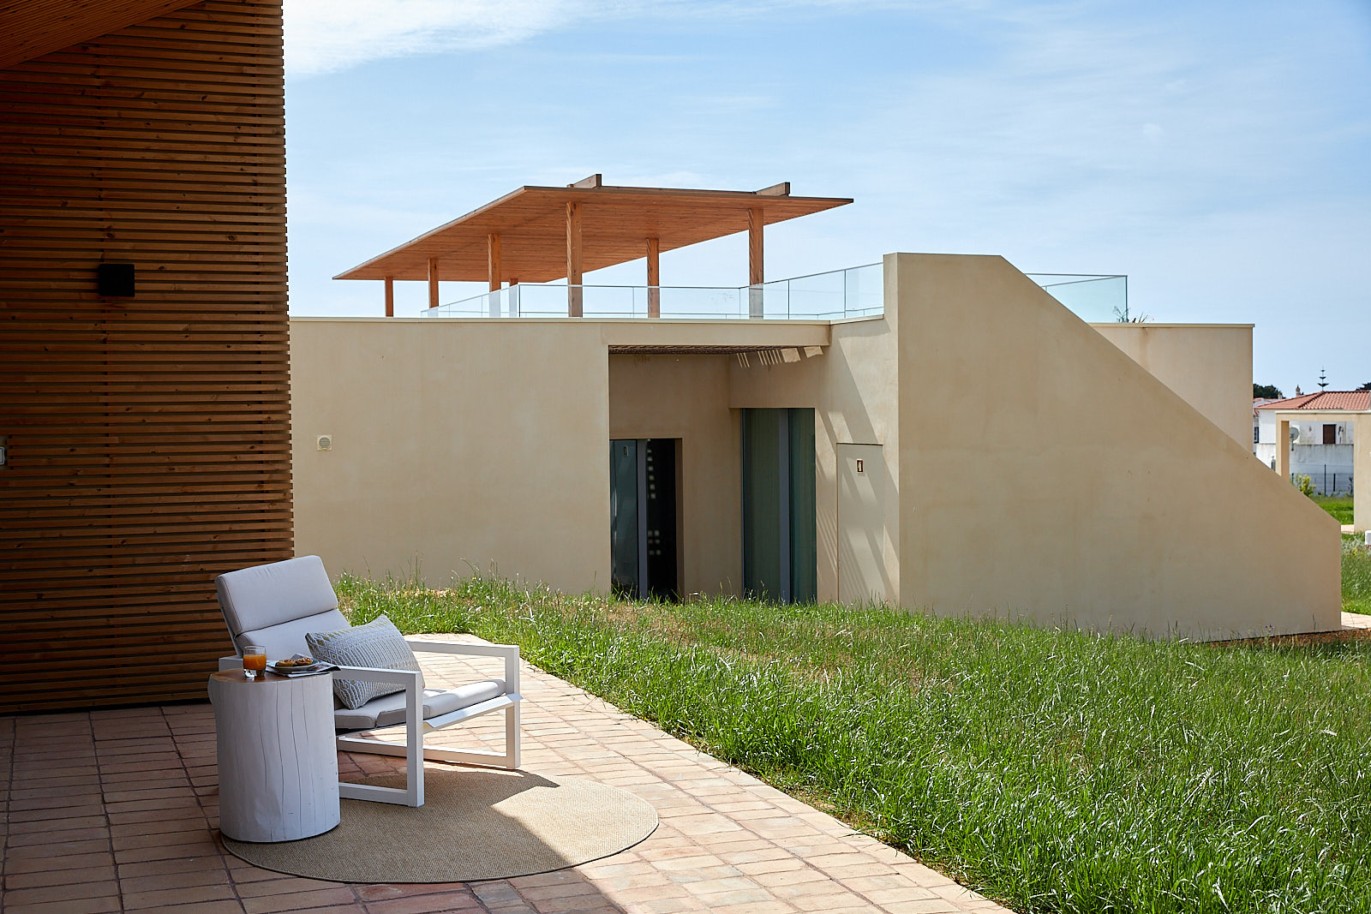 3 bedroom flat in resort, for sale in Porches, Algarve_230743